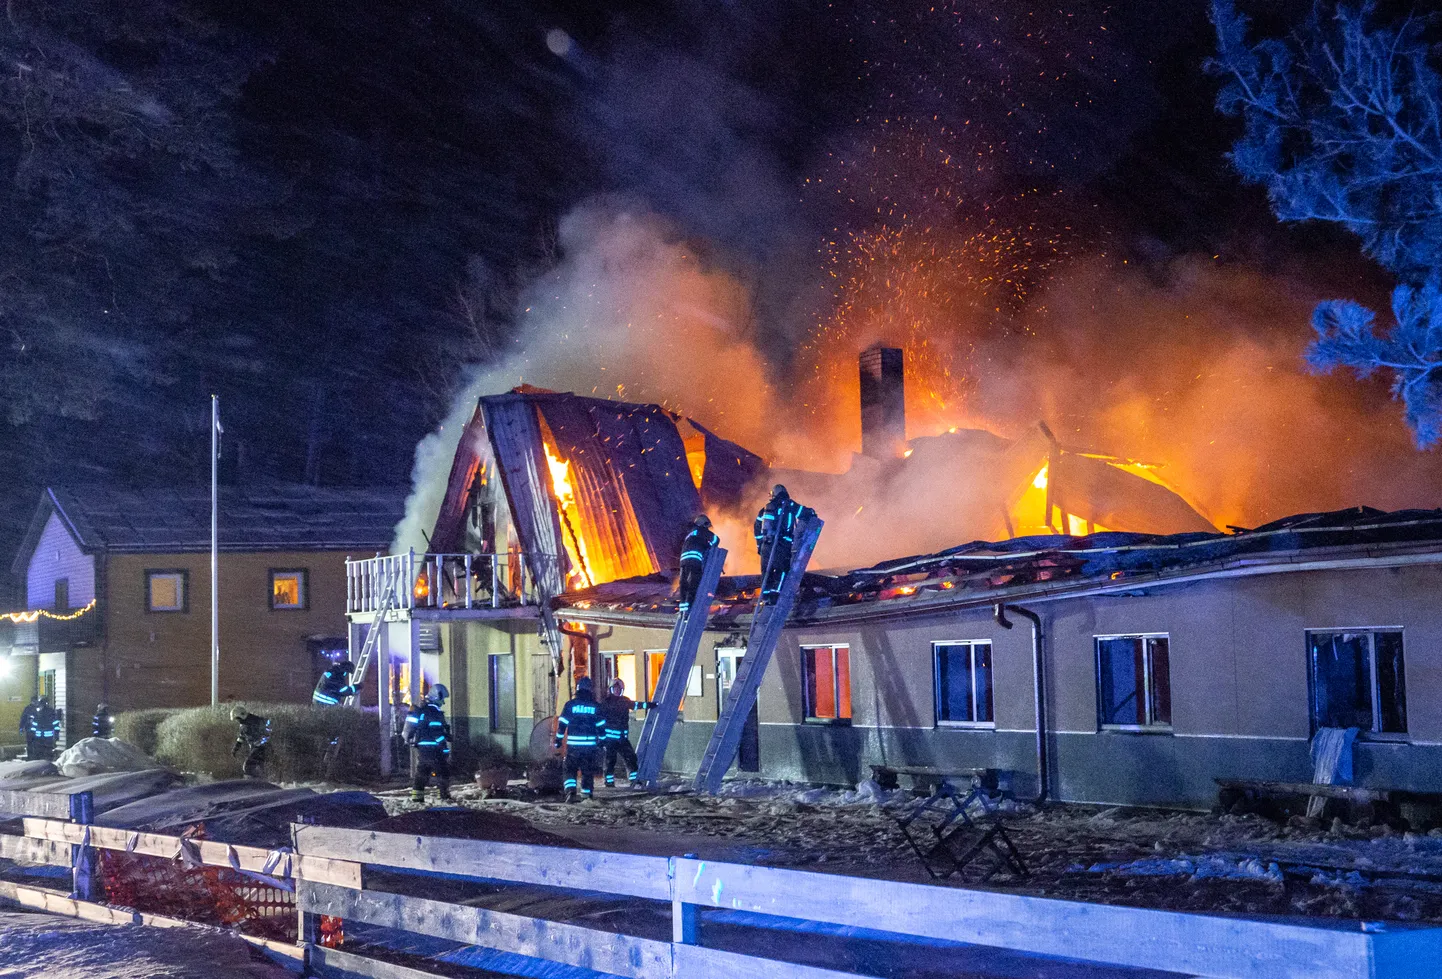 12 января 2021 года при пожаре в пансионате "Männiku" в деревне Аа погибли три человека. Тогда установили, что возгорание началось из-за неисправности одной из розеток.